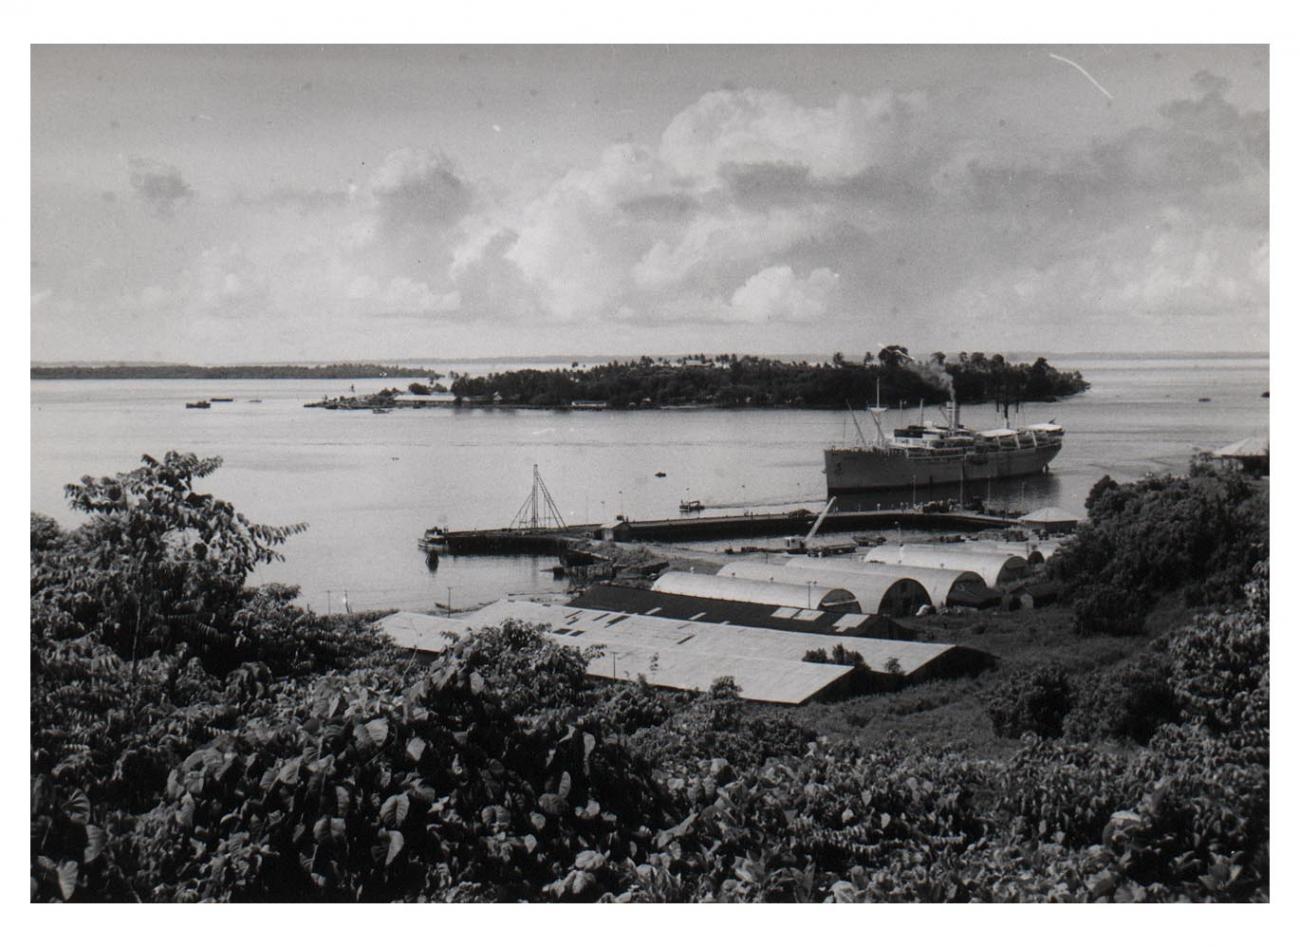 BD/54/12 - 
Haven van Sorong, waarin schip  wordt binnengeloodst
